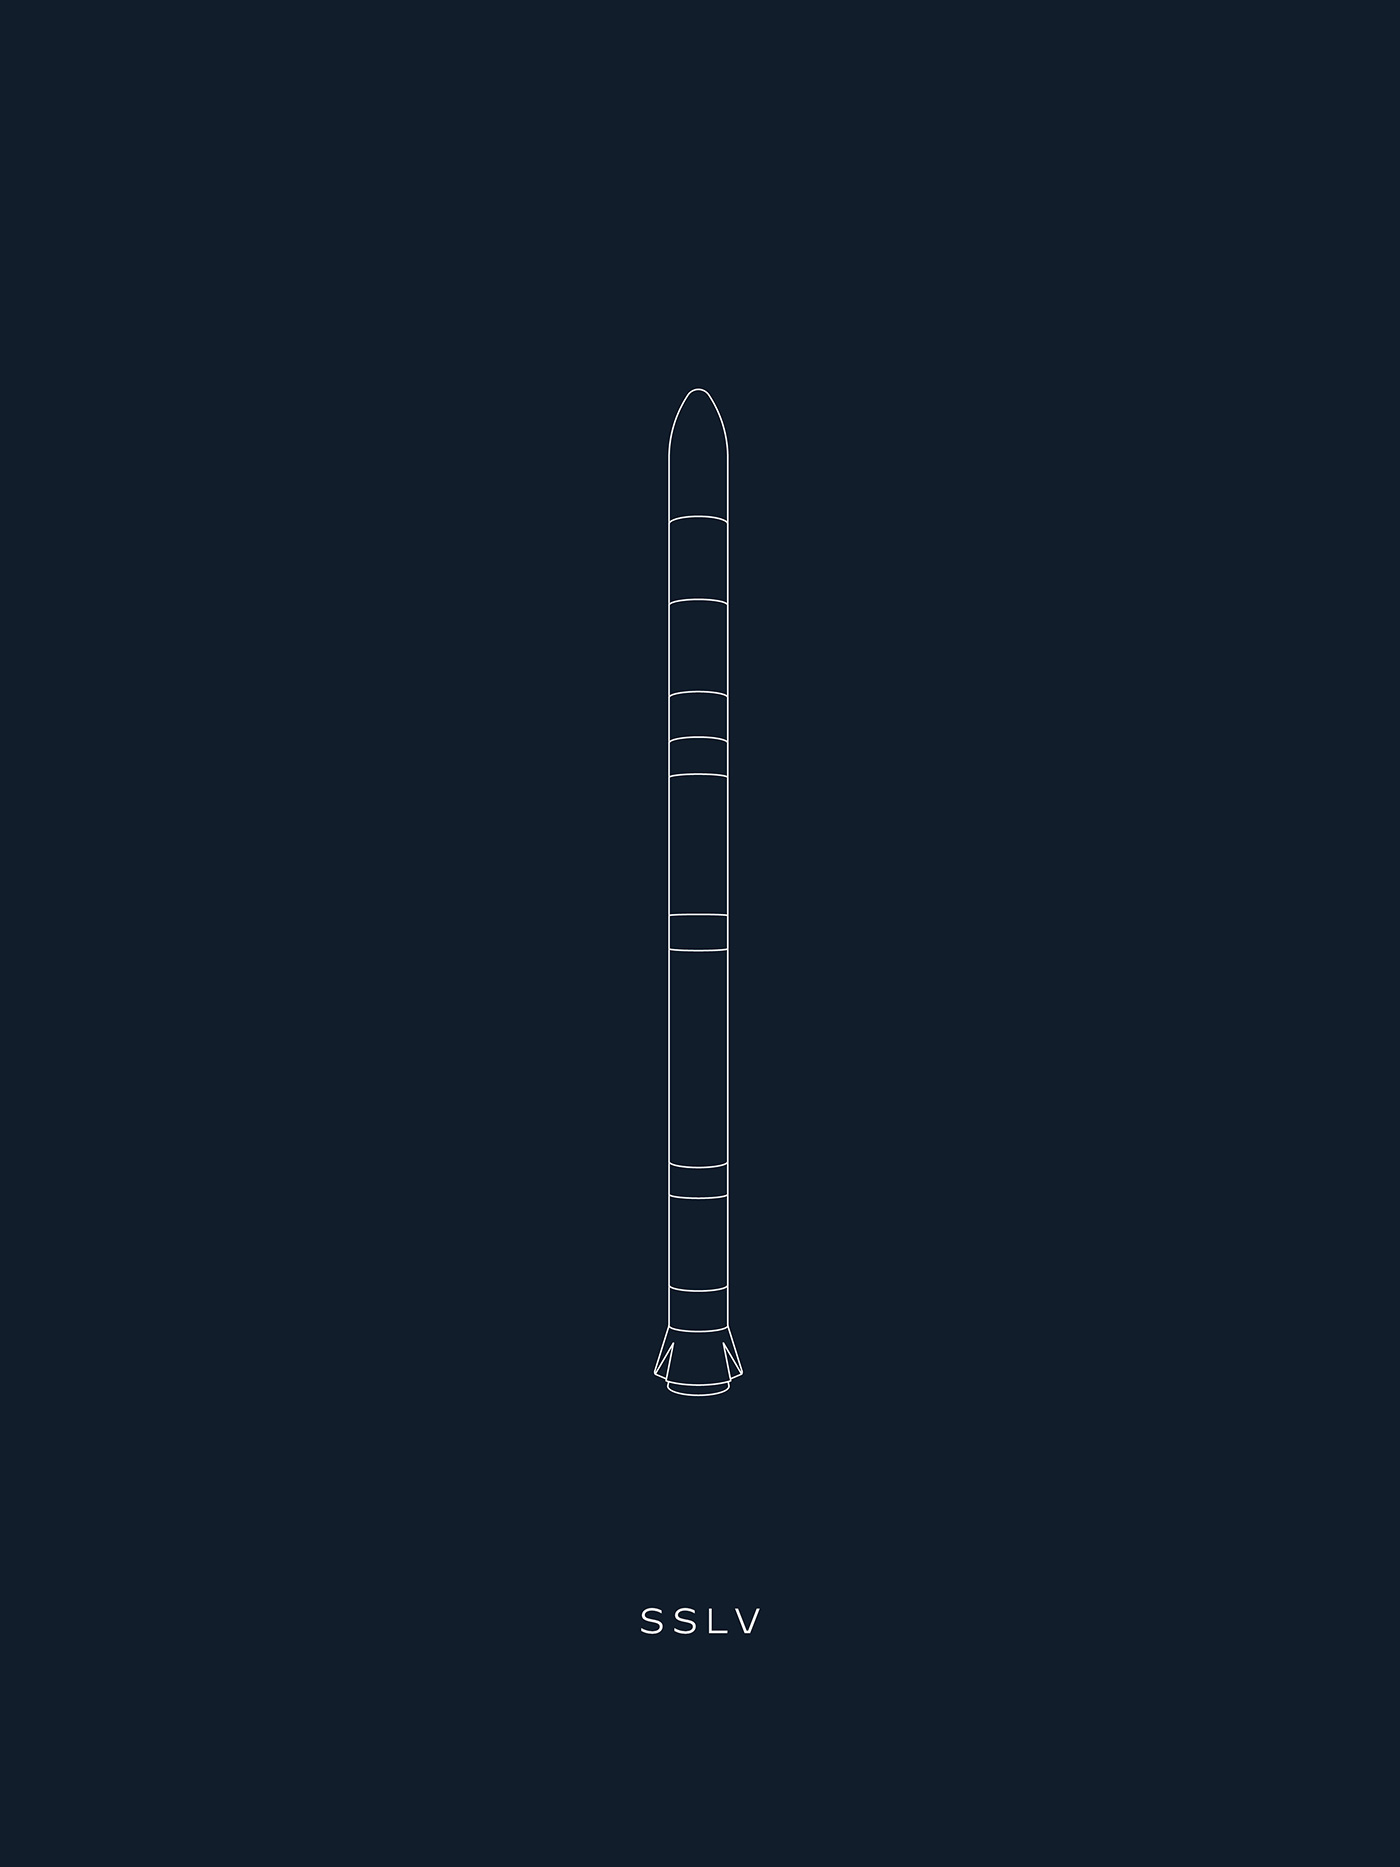 illustration of SSLV rocket